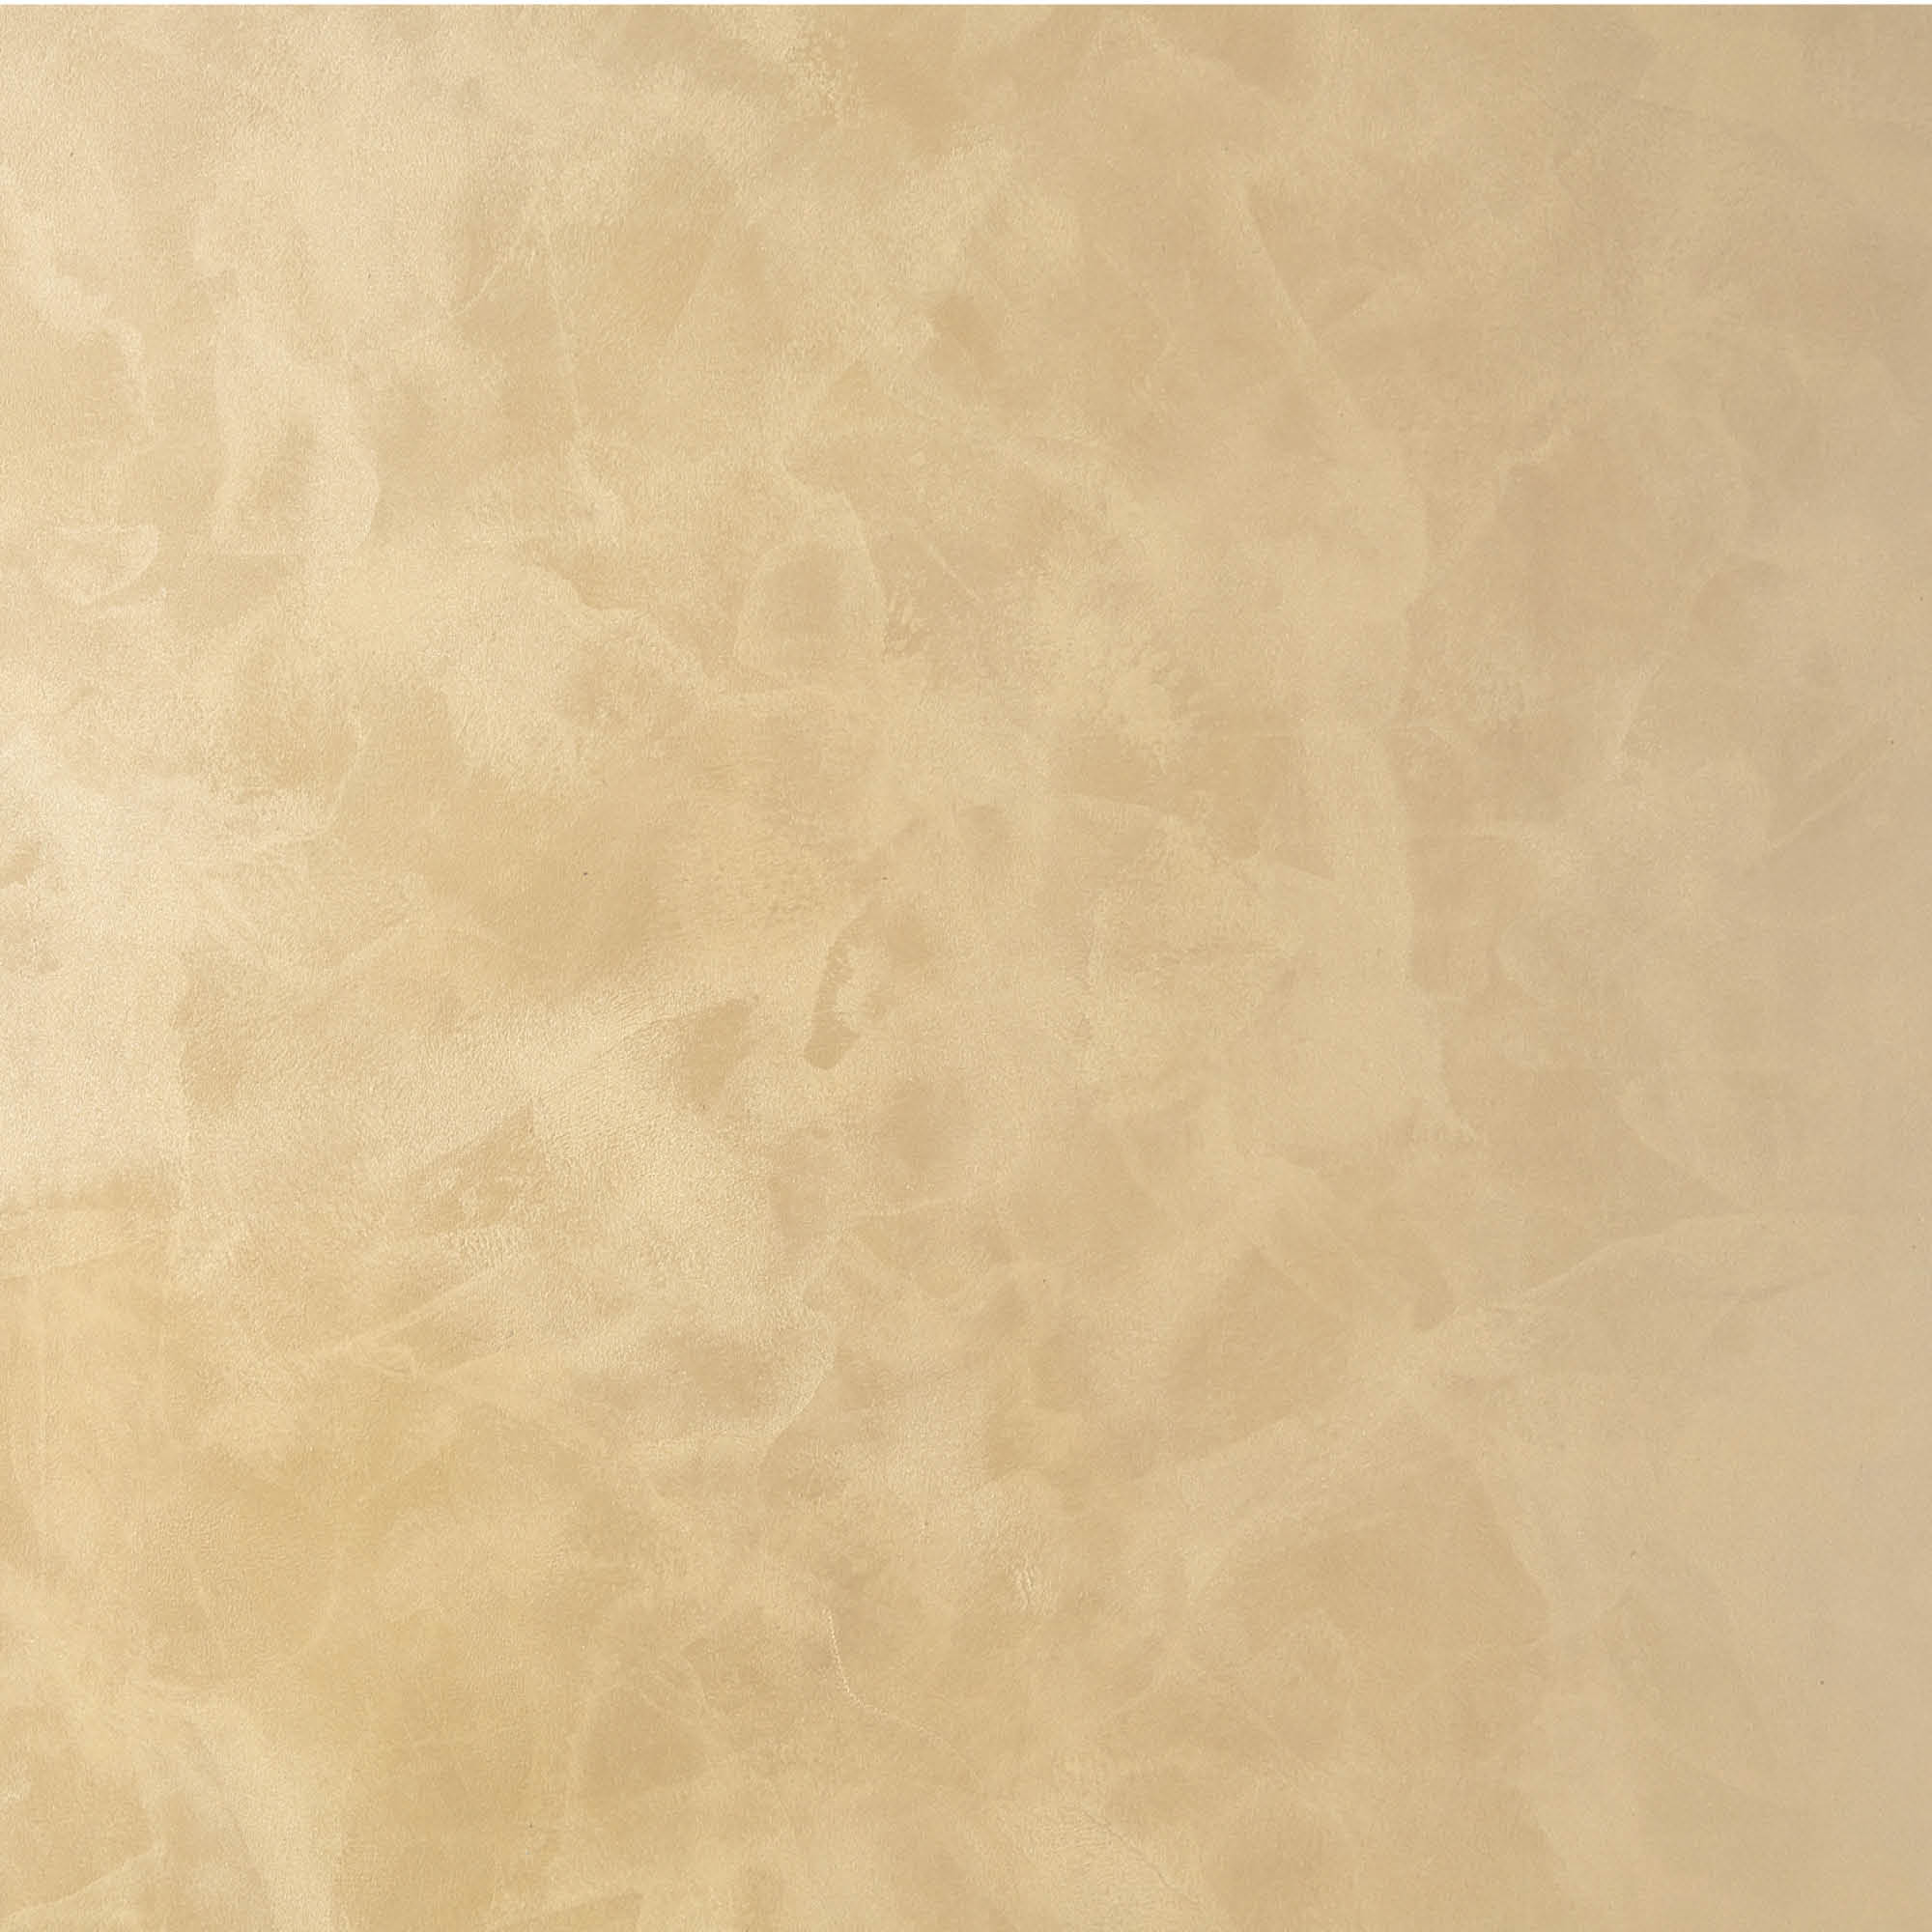 фото Декоративное покрытие для стен vincent decor afro argent с фактурой мелкого песка с серебристым эффектом 2,5 л